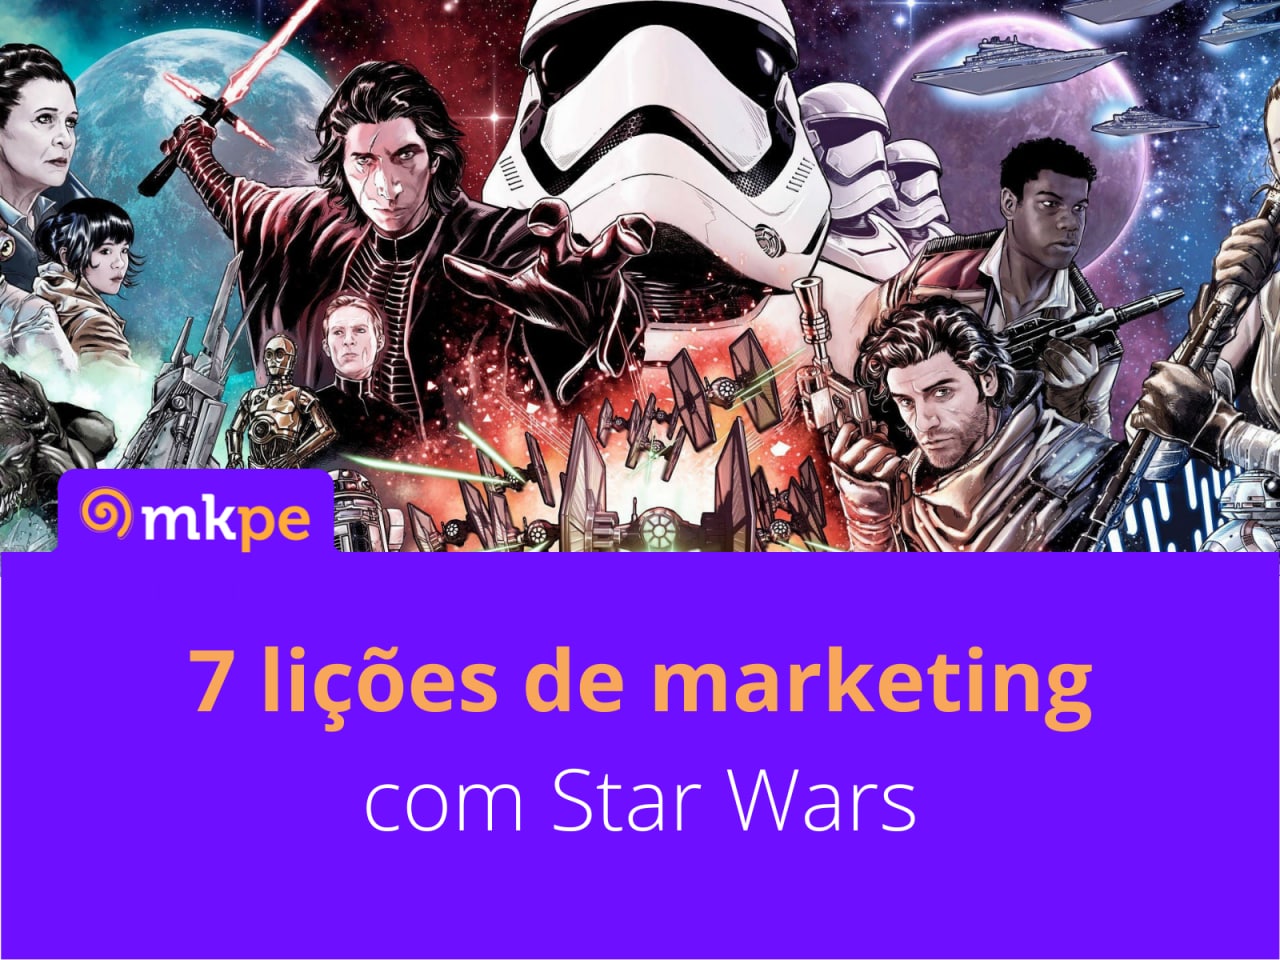 Star Wars, a Força e o Marketing de Conteúdo